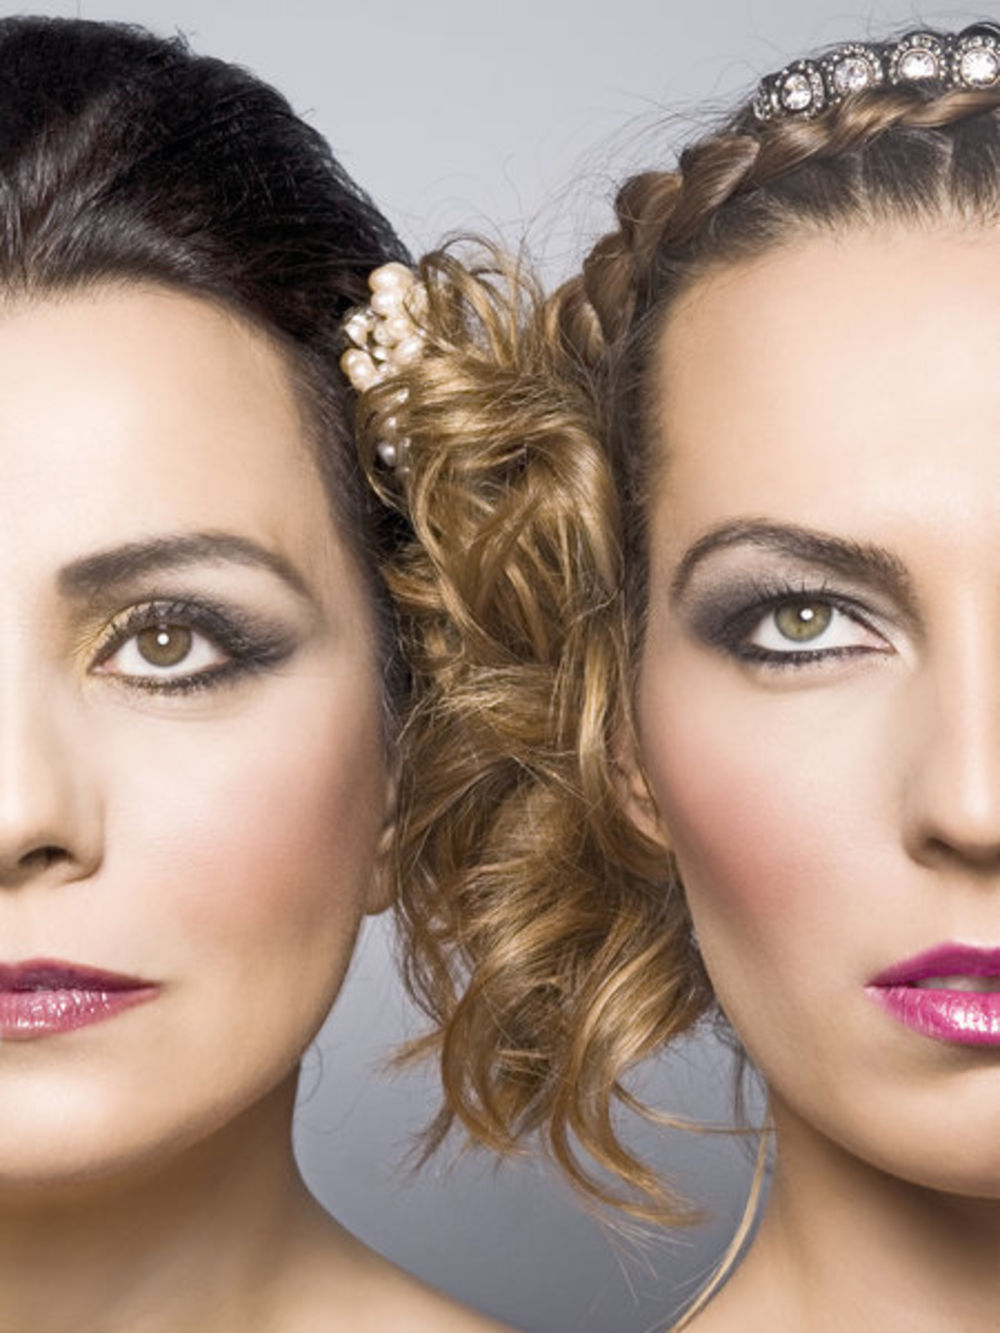 Iako uživaju u transformacijama na sceni, glumice Ljiljana Blagojević i Kalina Kovačević privatno neguju prirodan izgled, a i majci i ćerki podjednako je važno da im lice izgleda sveže, kosa bude zdrava, a nokti uredni